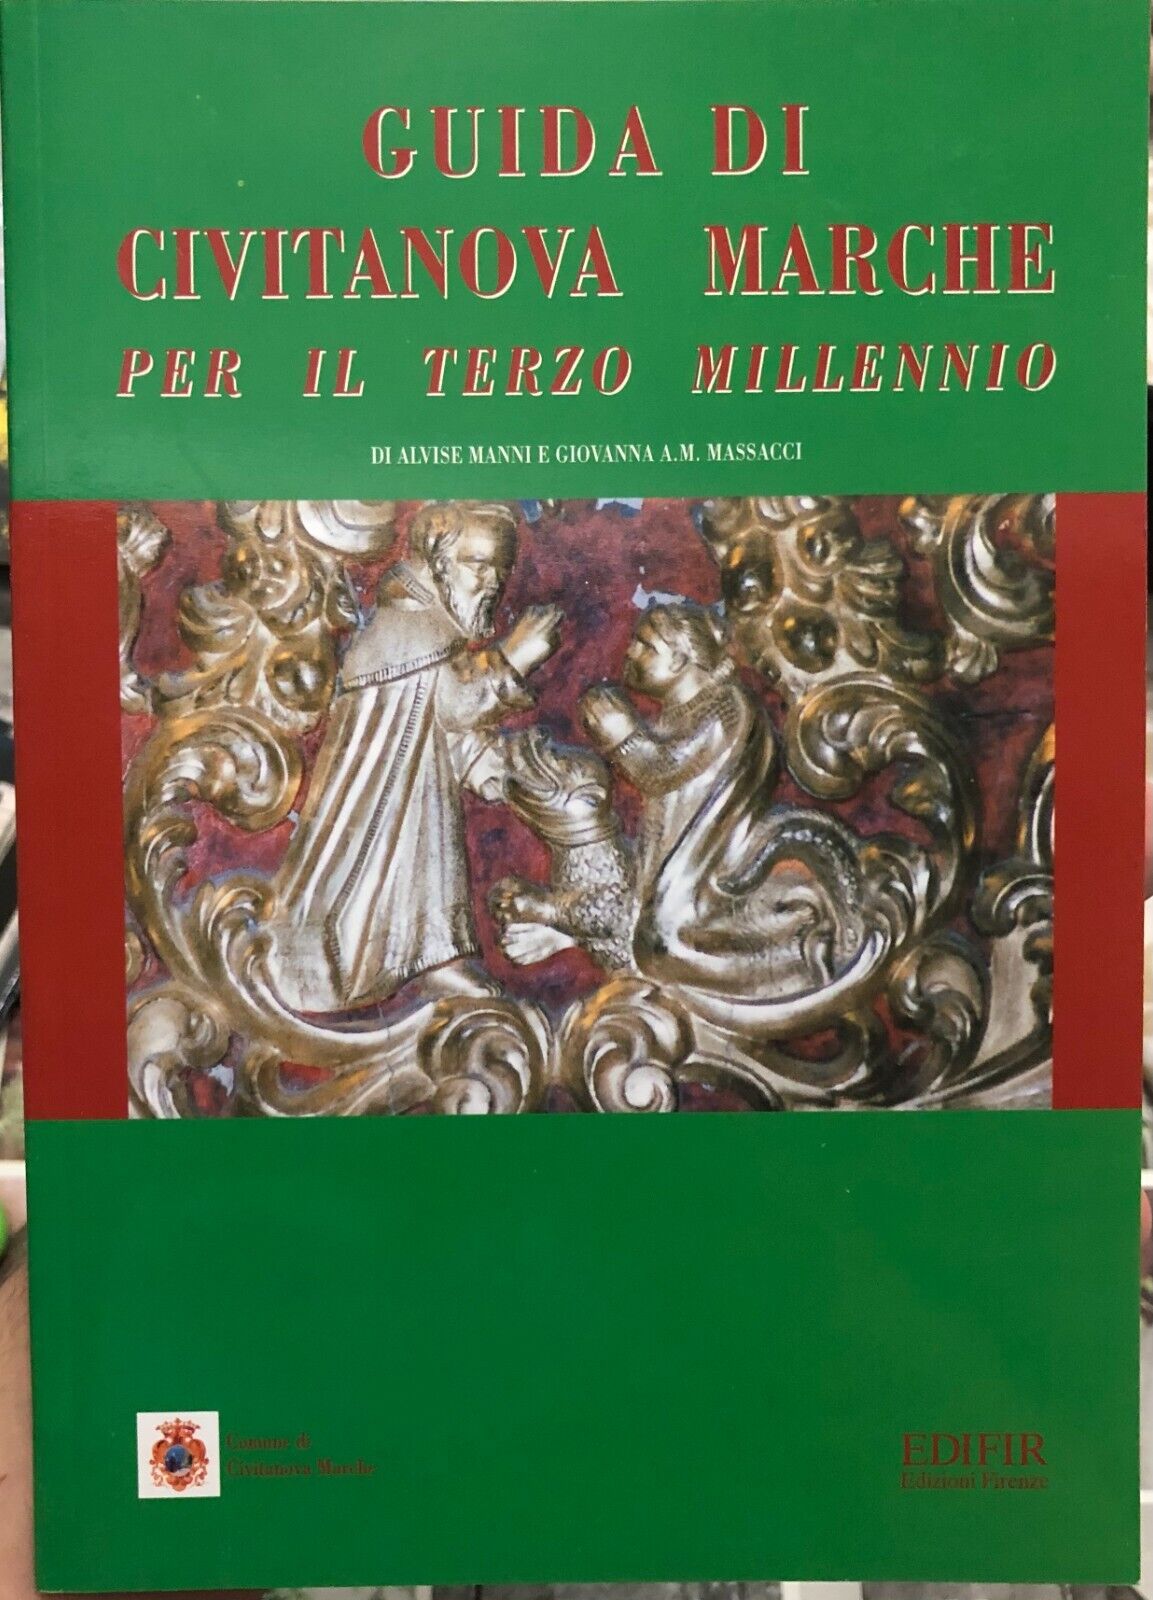 Guida di Civitanova Marche per il terzo millennio di Alvise Manni, Giovanna A. 